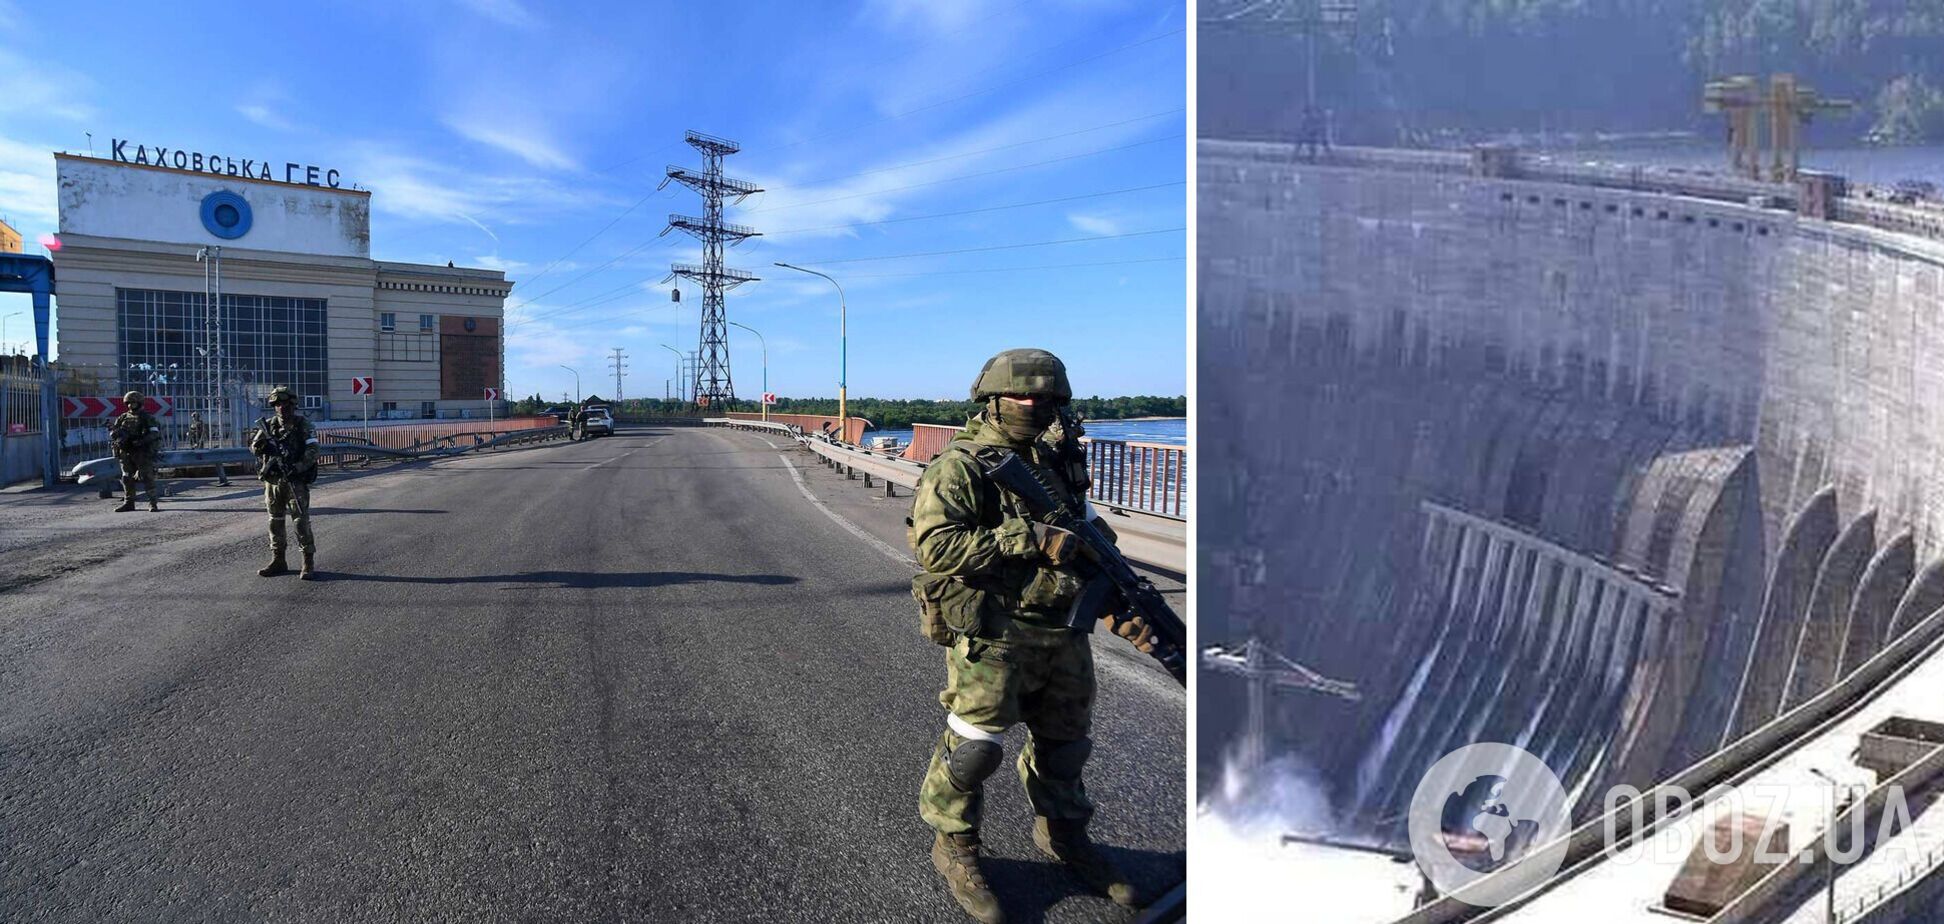 Подрыв оккупантами Каховской ГЭС грозит 'ядерной катастрофой': в ЦНС назвали главный риск